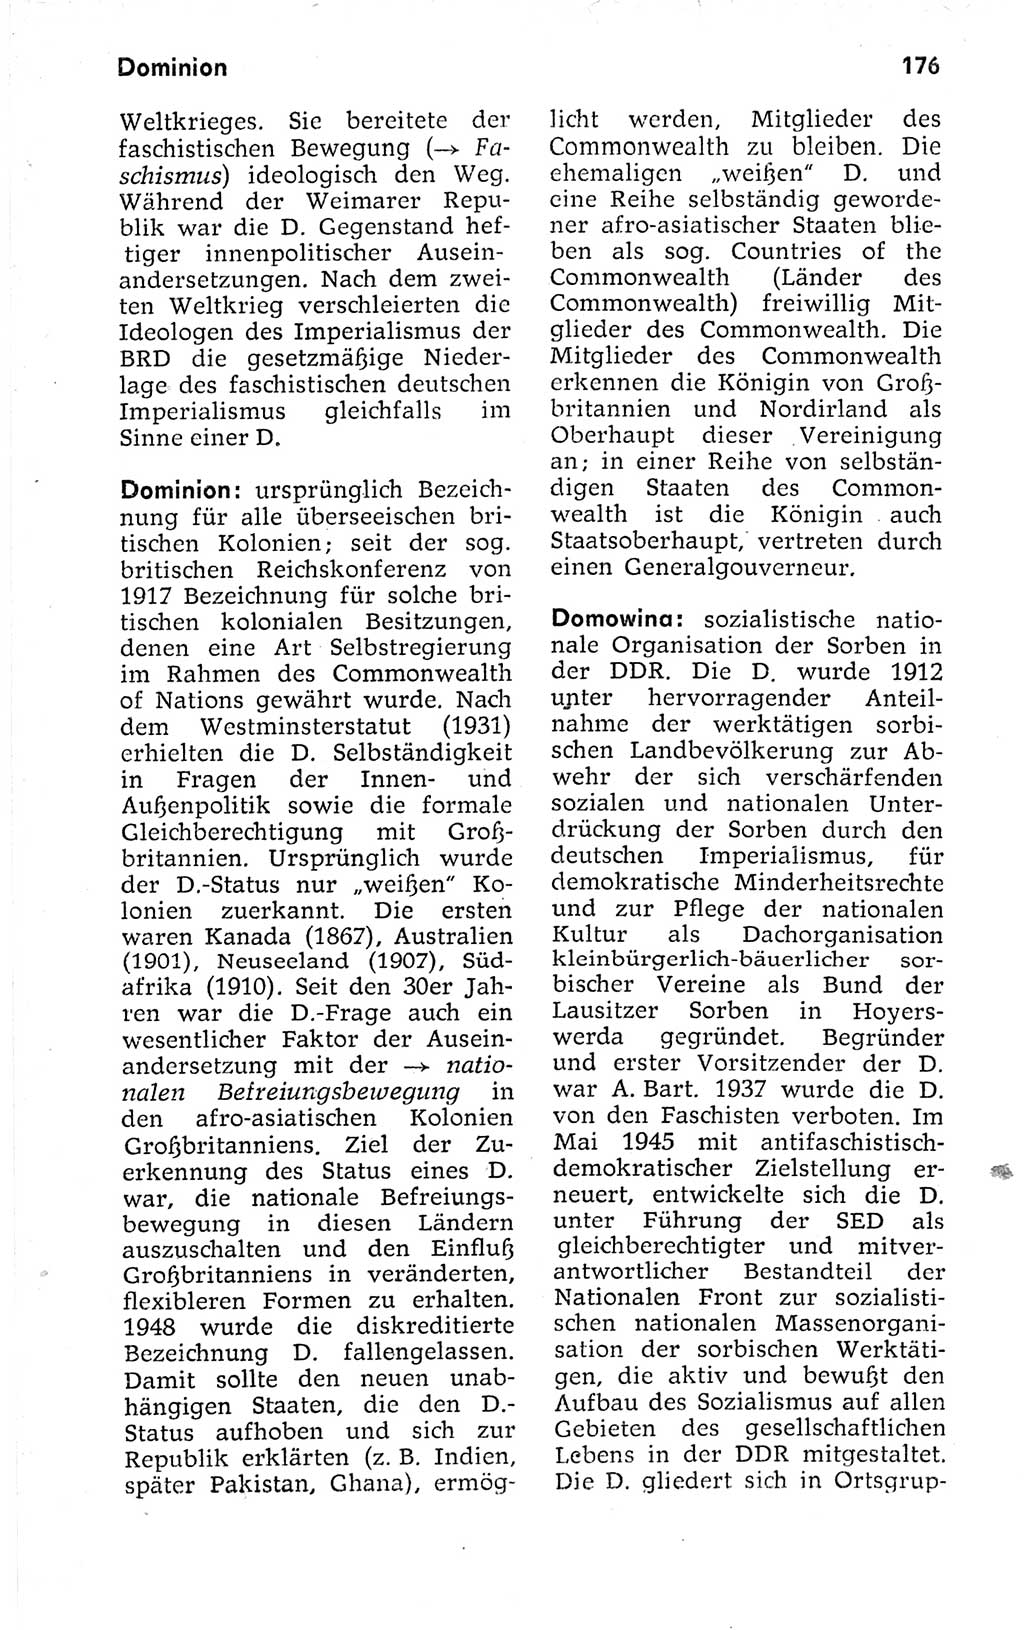 Kleines politisches Wörterbuch [Deutsche Demokratische Republik (DDR)] 1973, Seite 176 (Kl. pol. Wb. DDR 1973, S. 176)